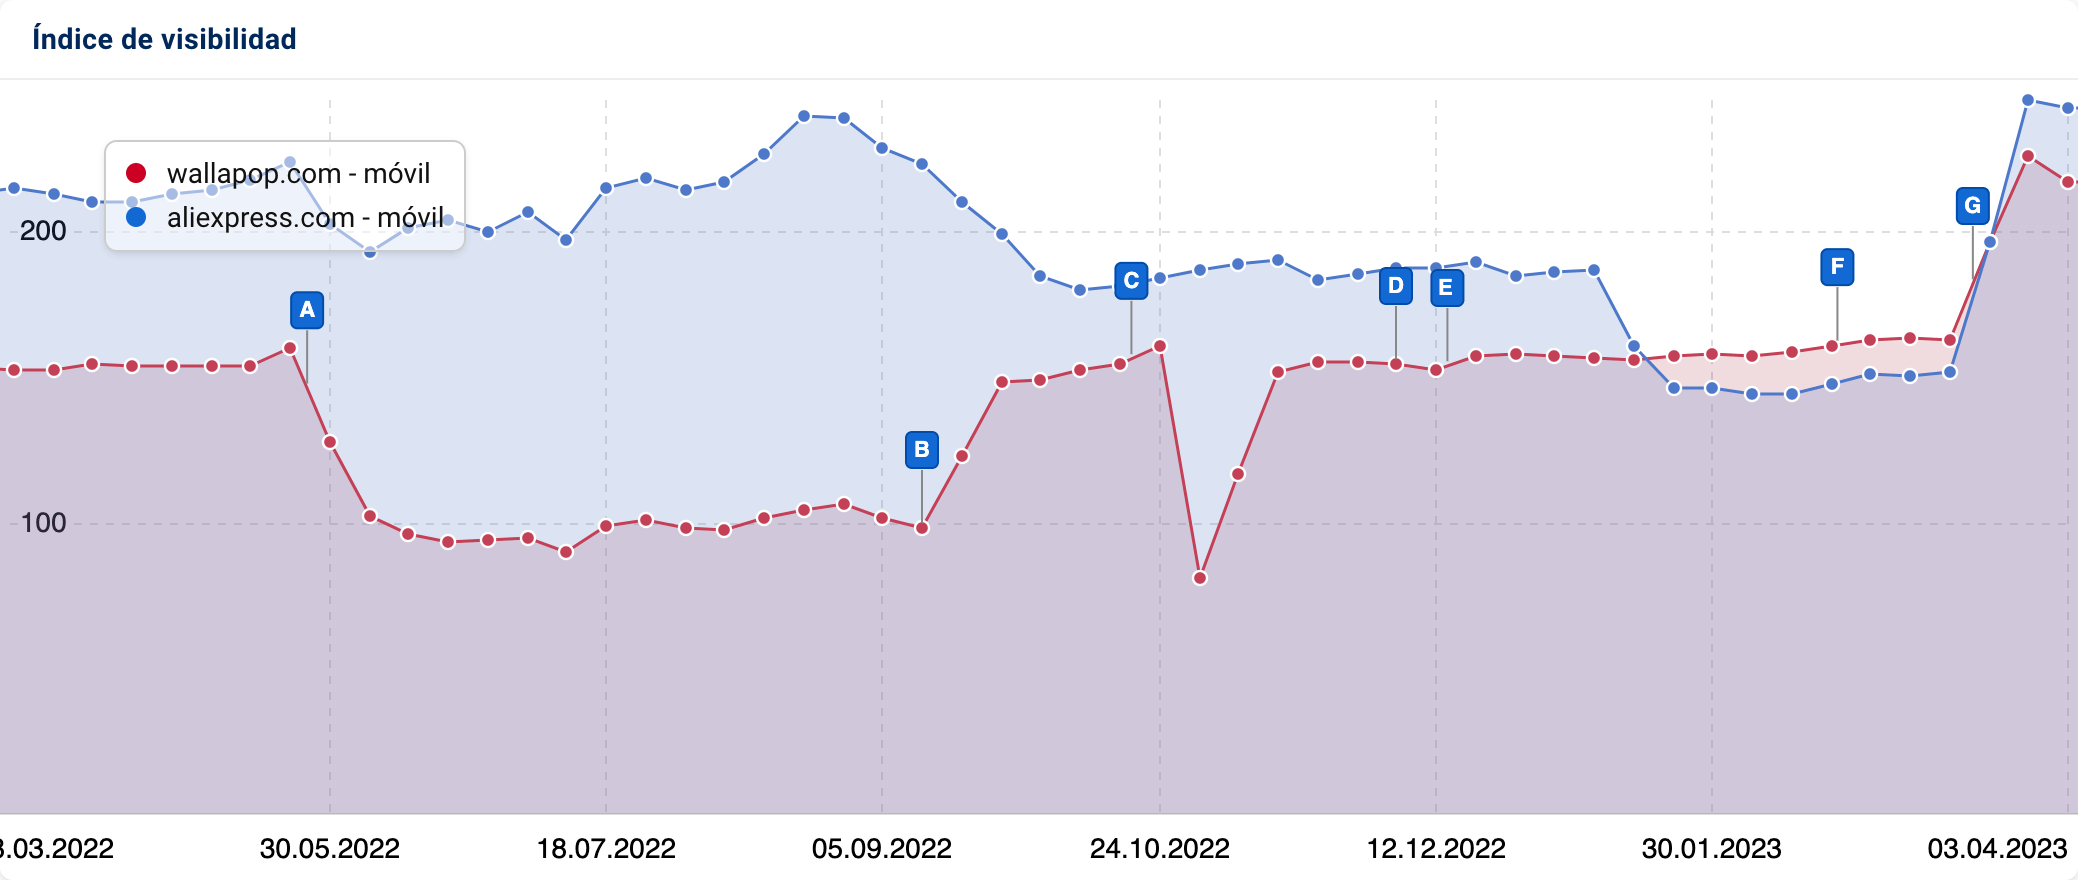 índice de Visibilidad - comparación entre los dominios "wallpop.com" y "aliexpress.com"